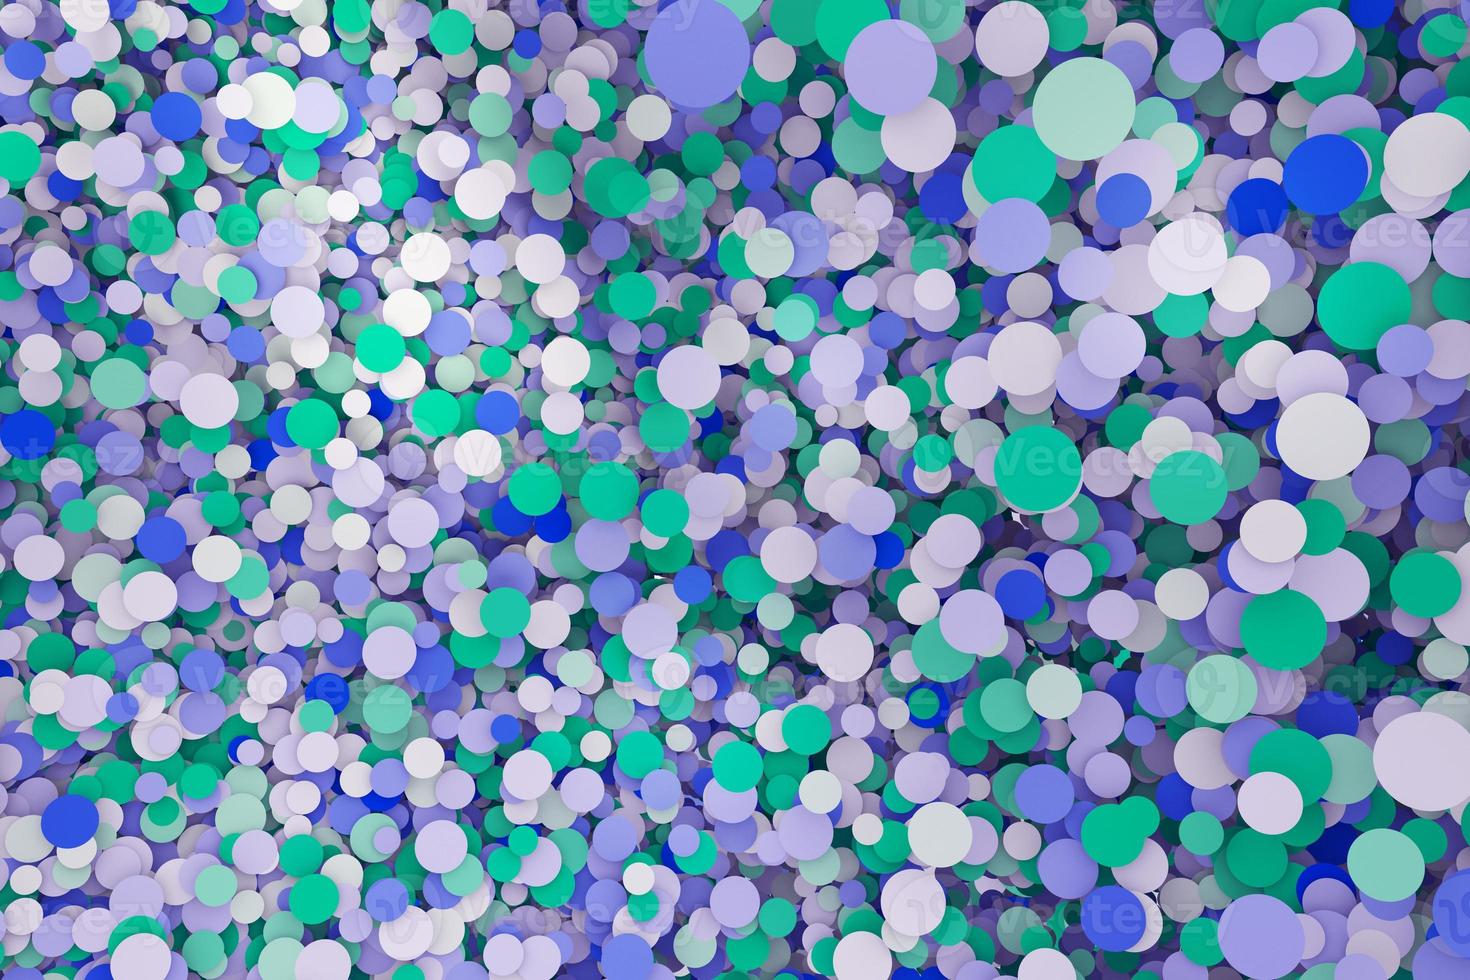 visualização abstrata colorida do projeto do fundo da parede do mosaico dos confetes pequenos. renderização em 3d de círculos irregulares geométricos limpos e modernos foto